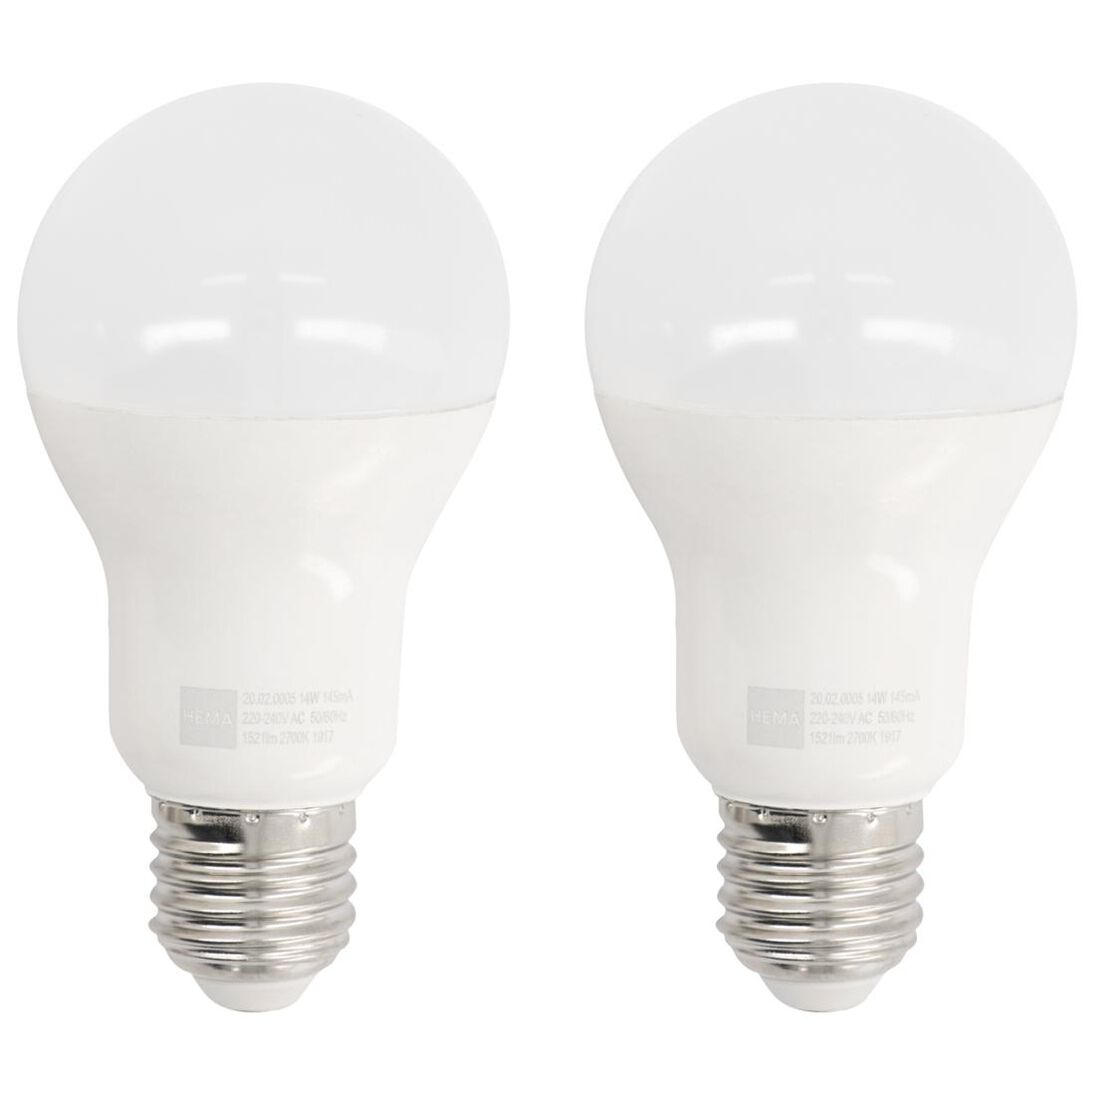 LED lamp 100W - 1521 lm - peer - mat - 2 stuks - HEMA